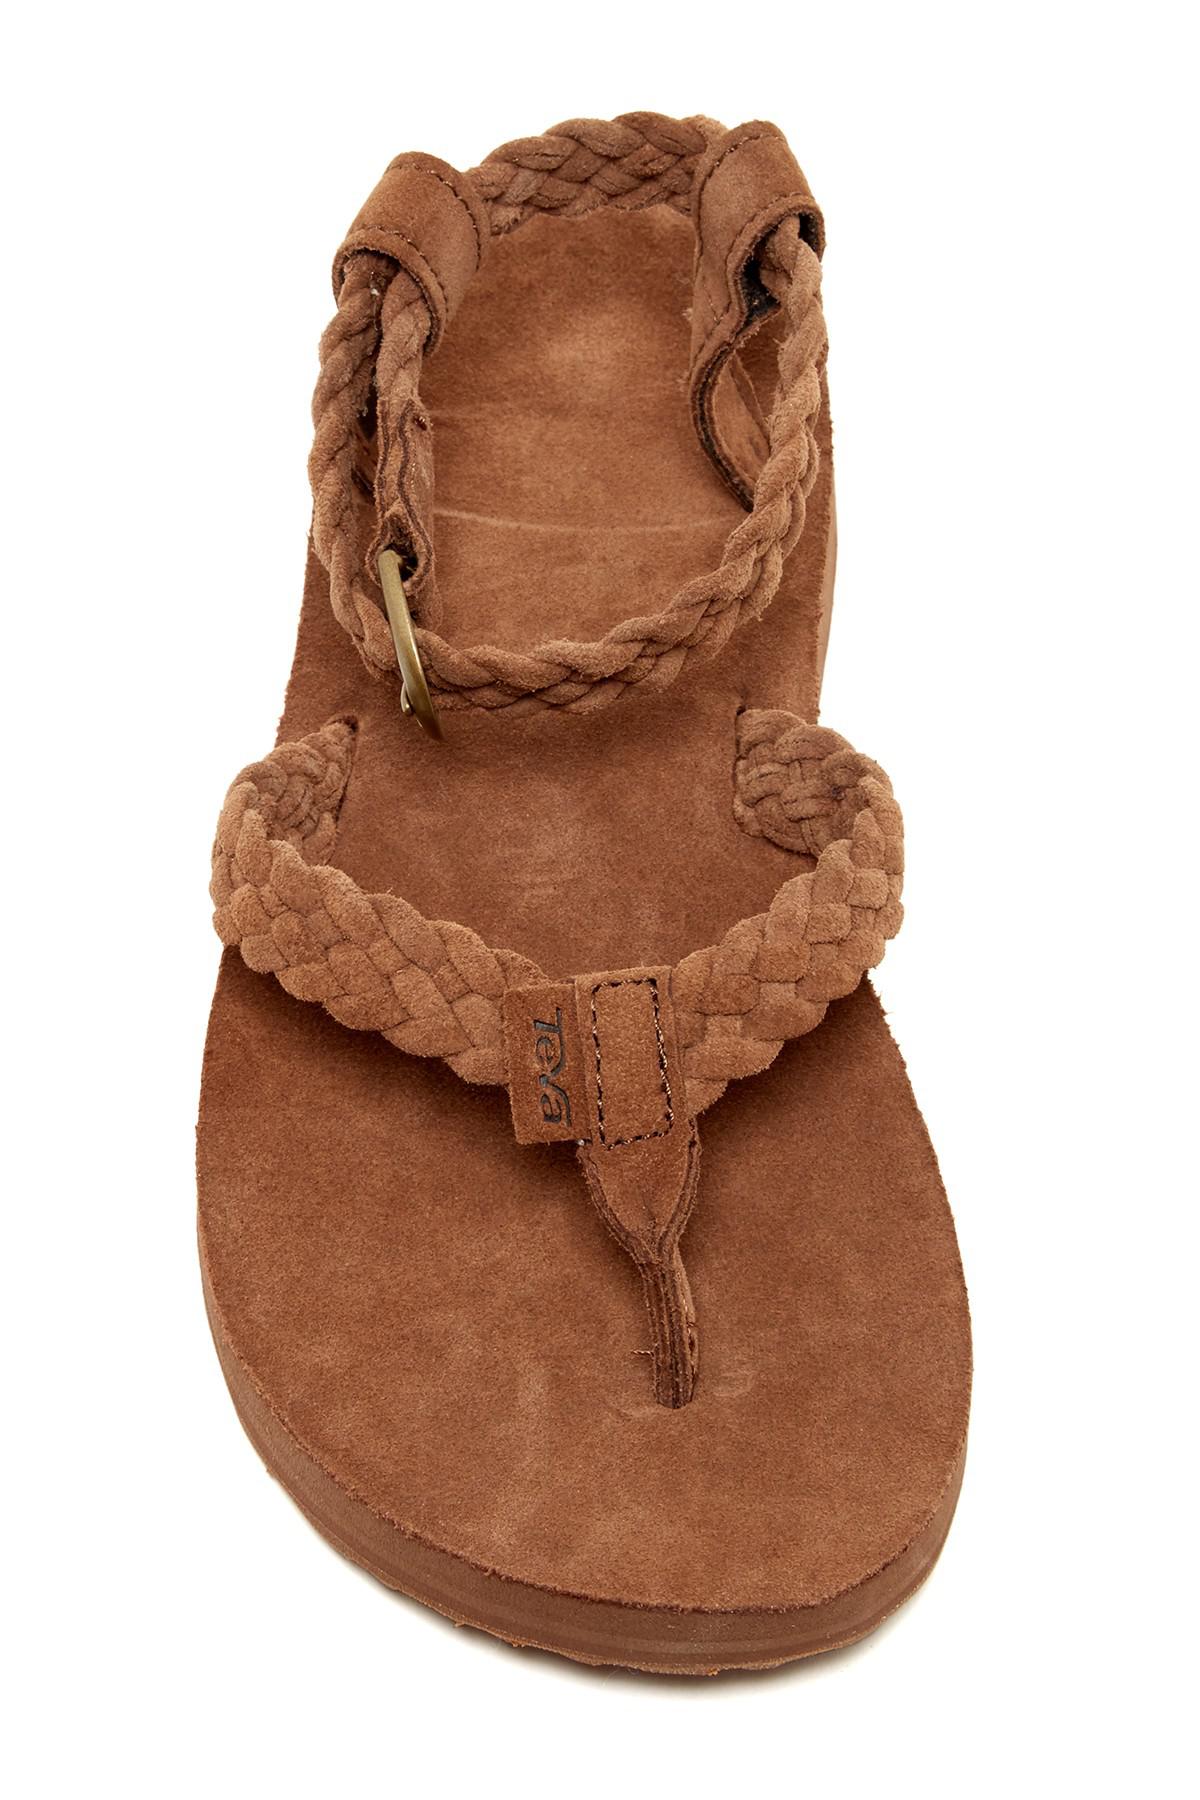 Teva Original Suede Braid Thong Sandal in Brown | Lyst